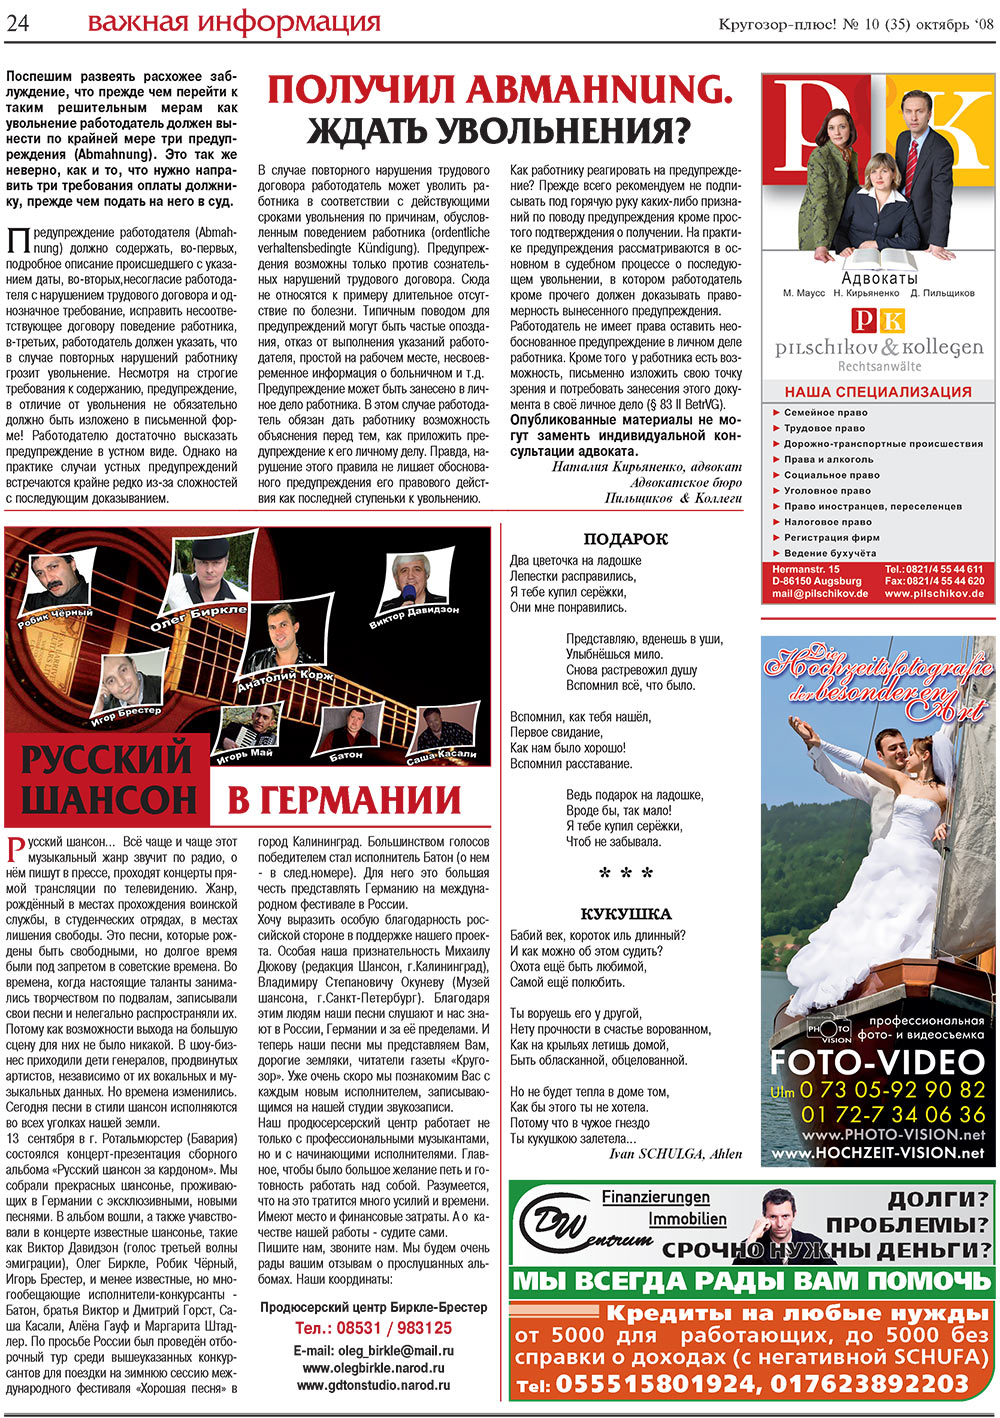 Кругозор плюс!, газета. 2008 №10 стр.24